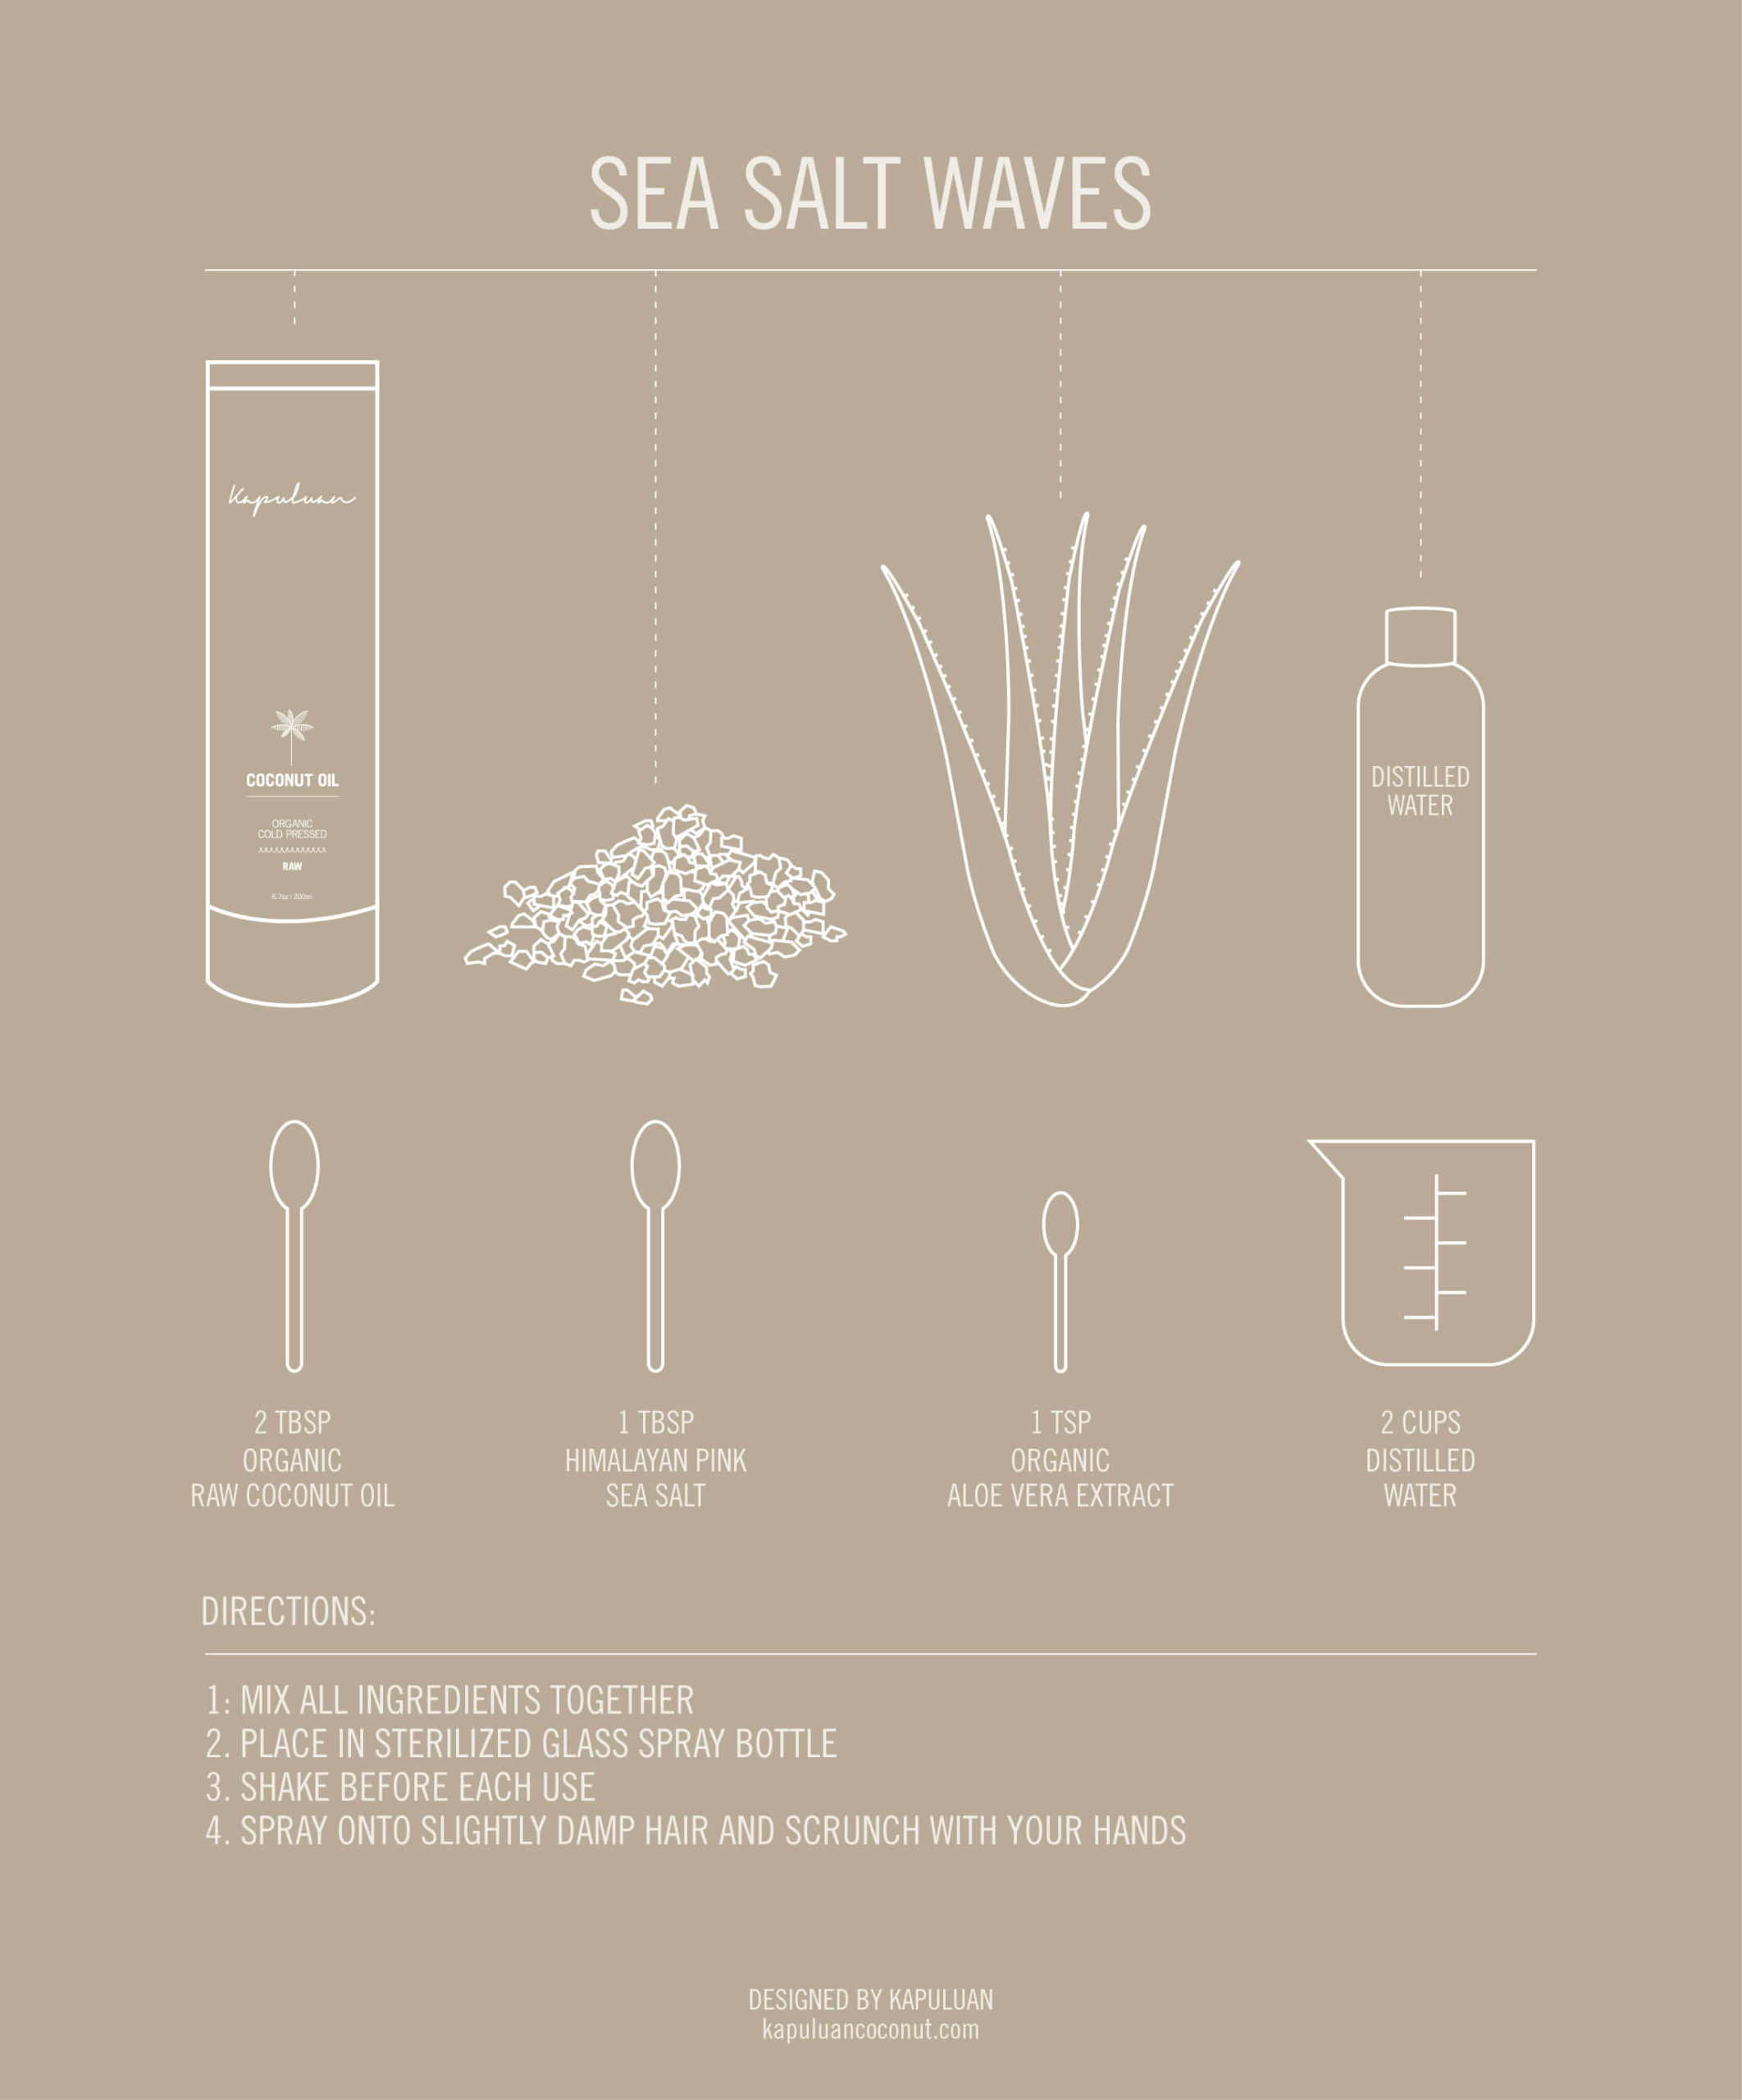 kapuluan coconut oil beauty recipes infographic sea salt diy spray for beachy hair